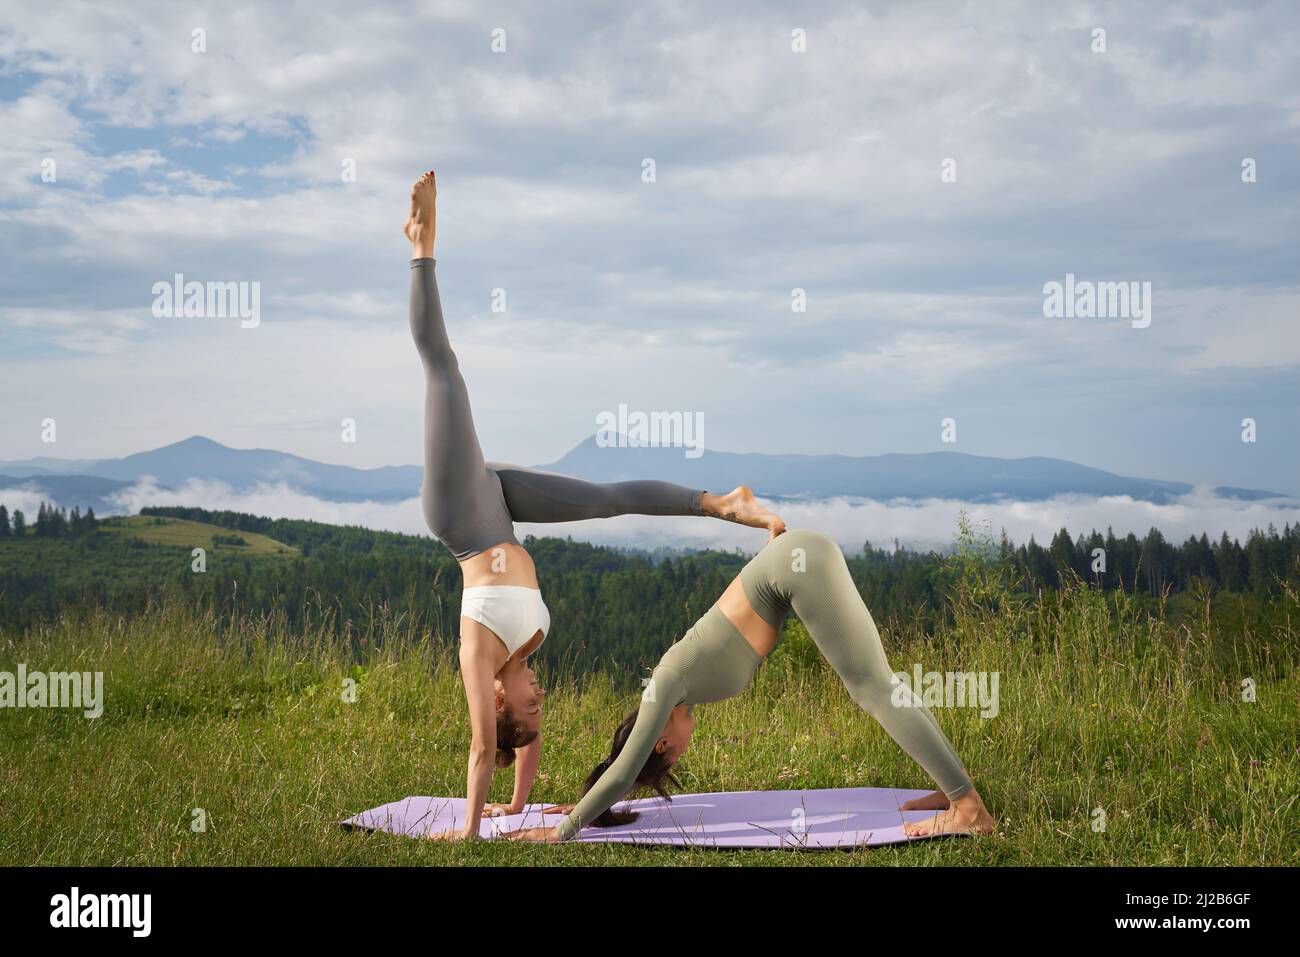 Zwei kaukasische Frauen in Sportkleidung üben während des Sommers unter den Bergen Akro-Yoga. Konzept der Menschen, gesunde Lebensstile und Outdoor-Aktivitäten. Stockfoto